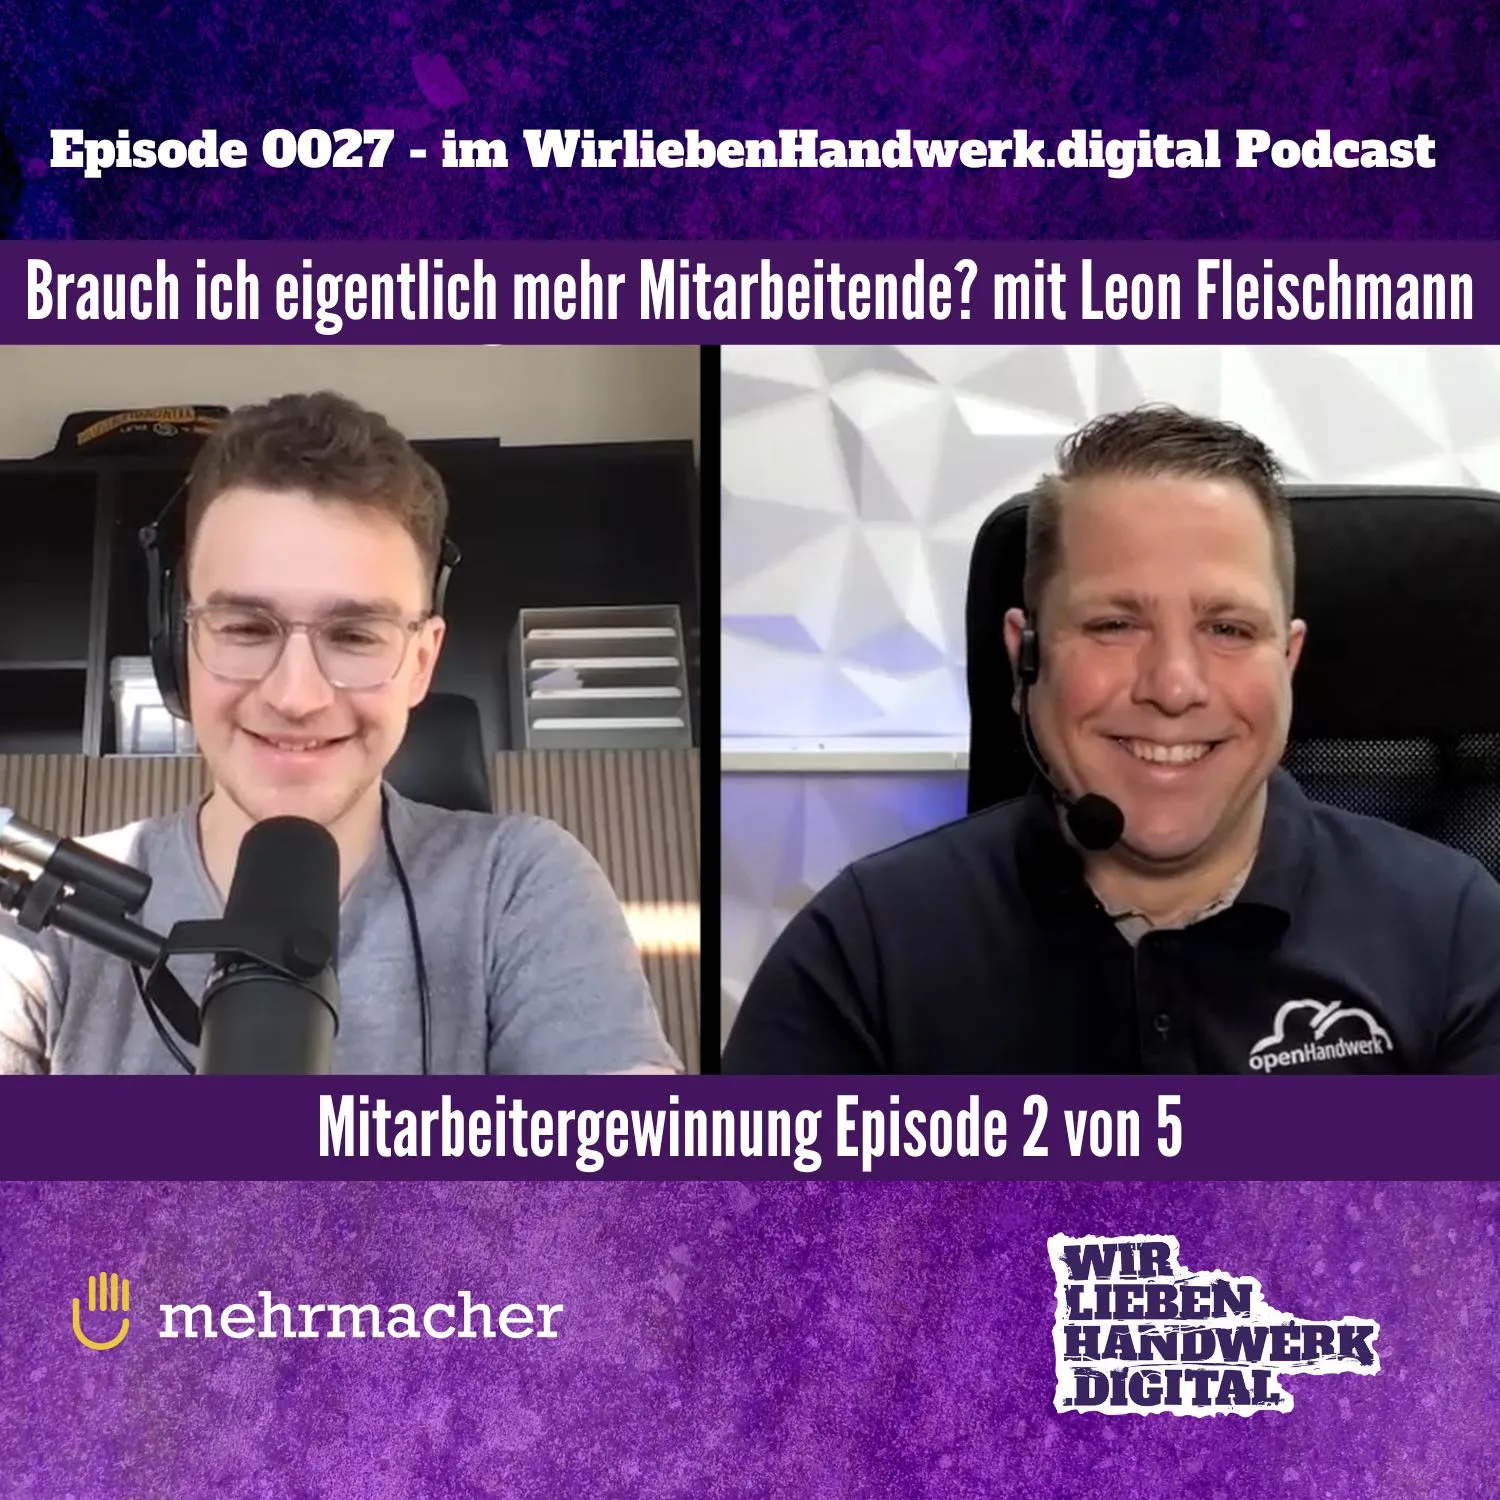 Mitarbeitergewinnung "Wo fängt die Reise an?" - Podcast Episode mit Leon Fleischmann von mehrmacher GmbH im WirliebenHandwerk.digital Podcast